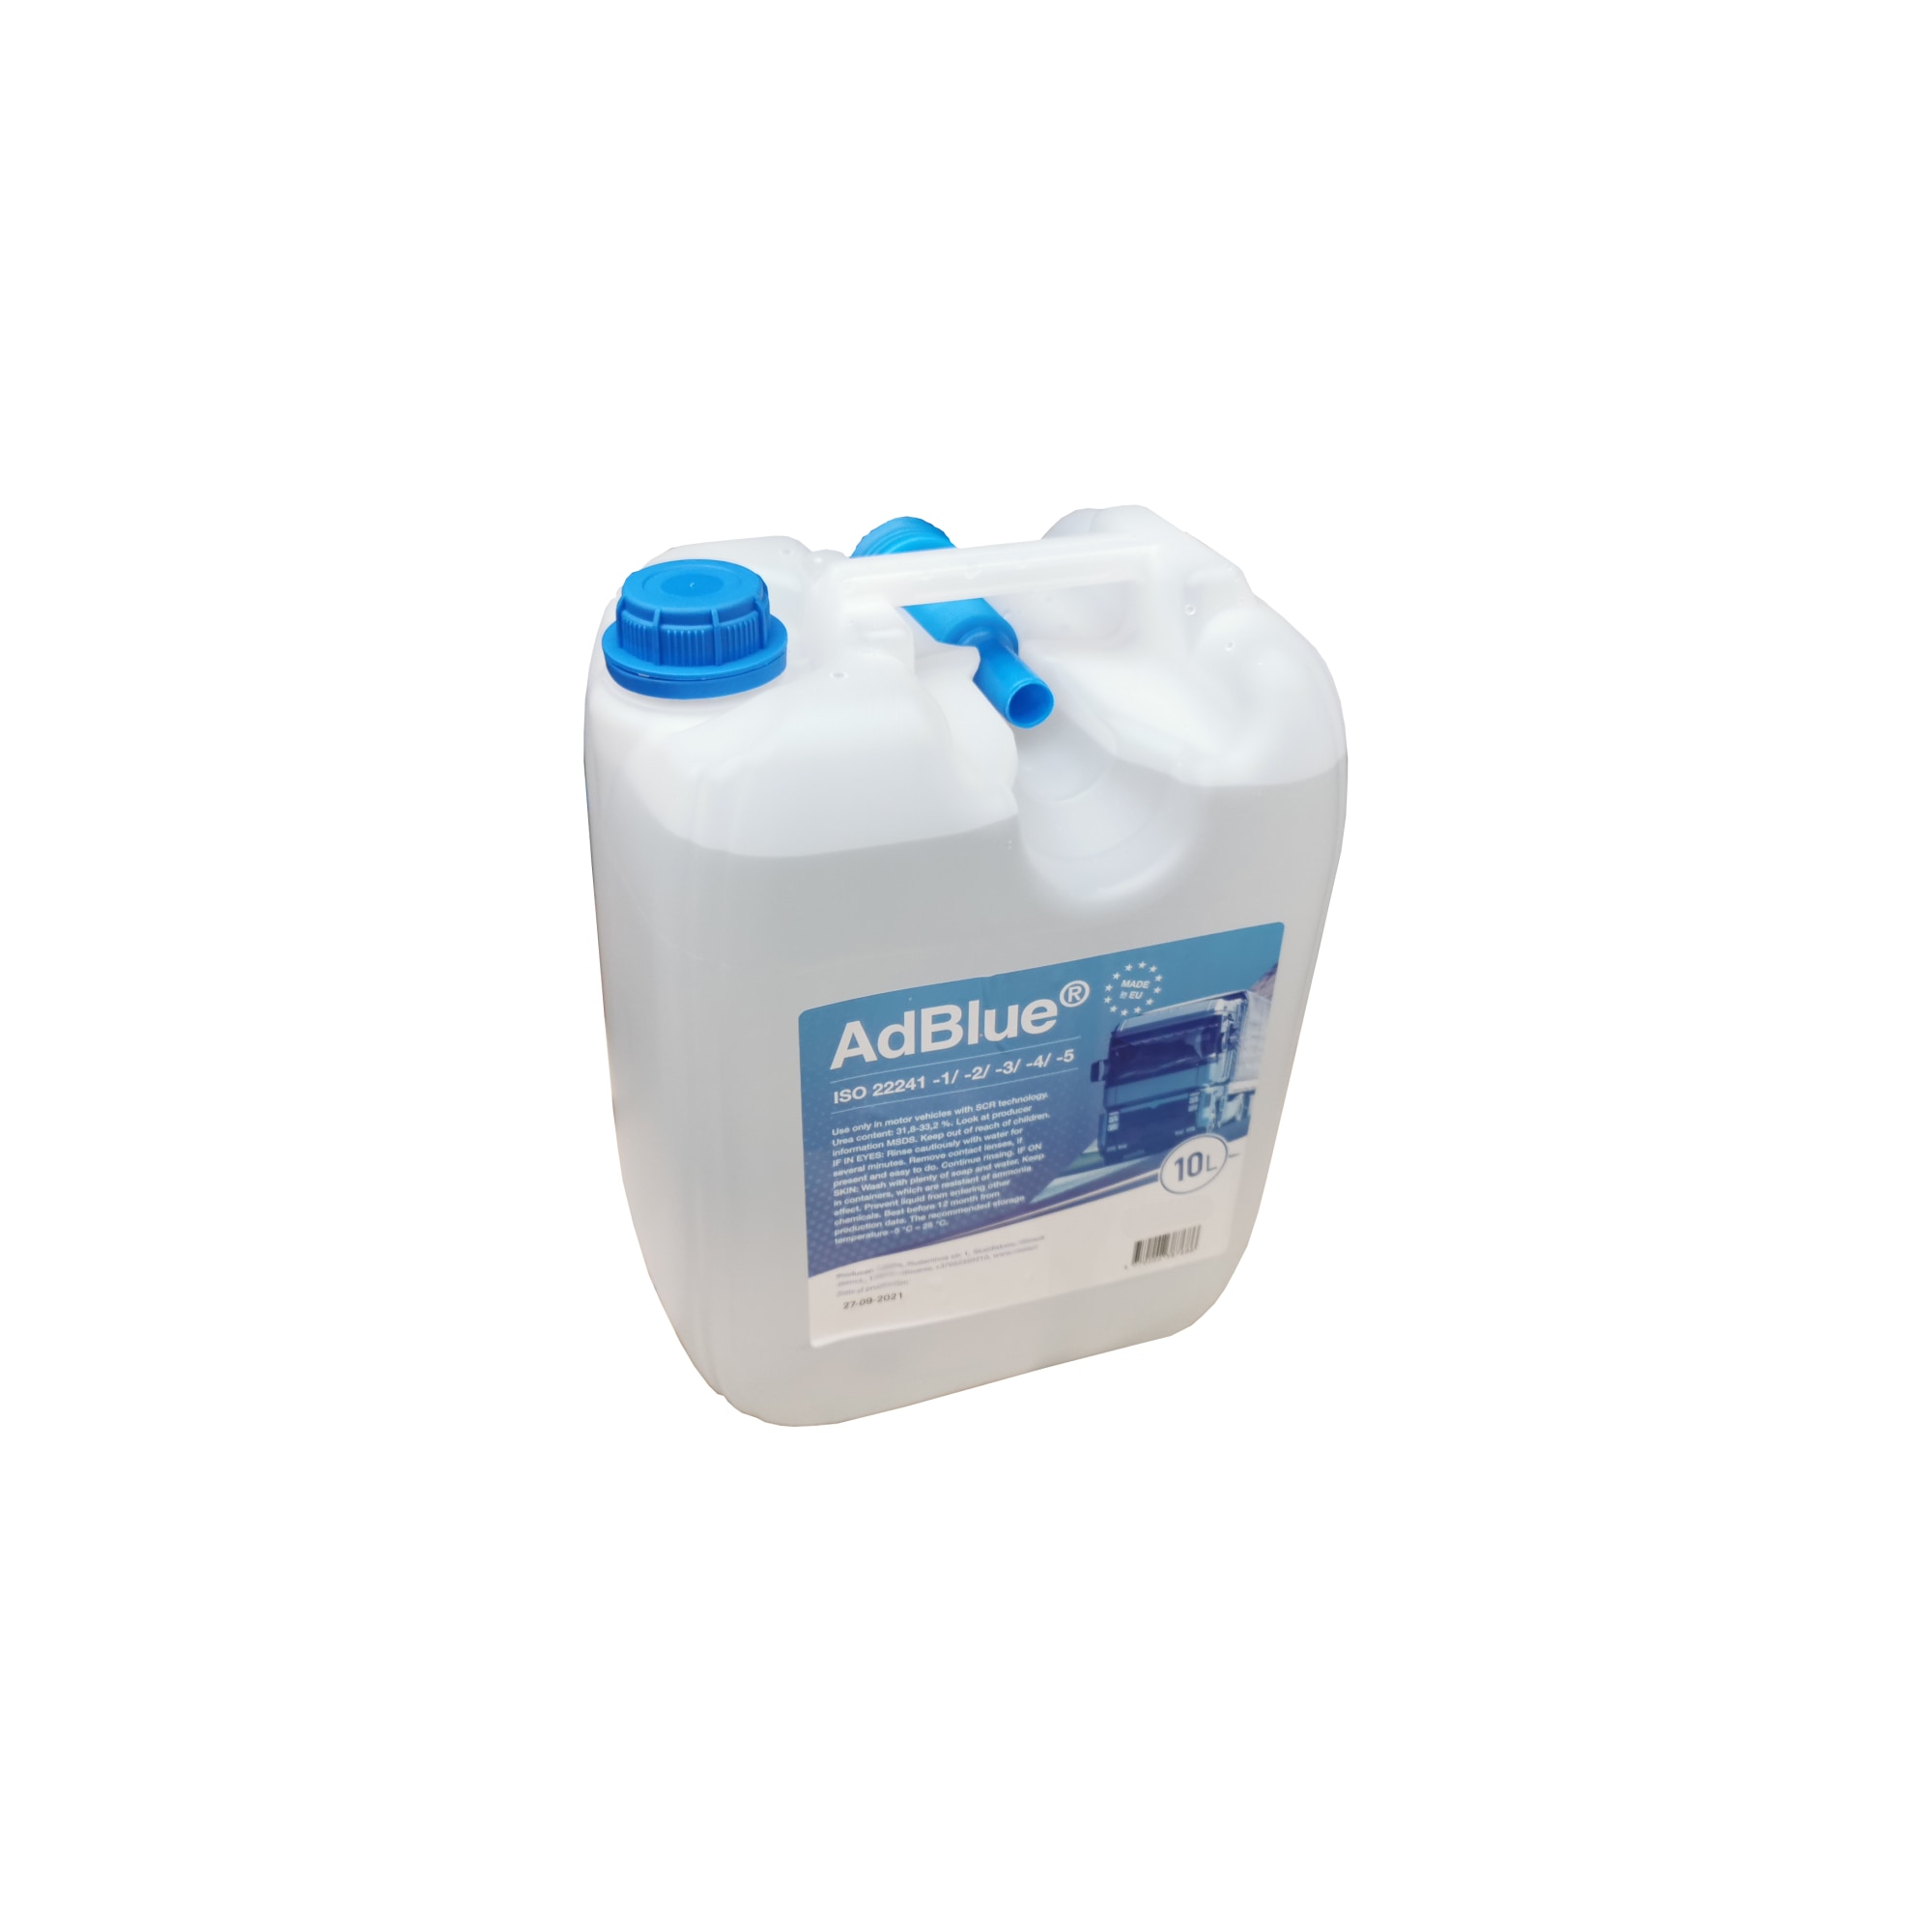 Additif pour filtre à particules Dreissner AdBlue, 10L - ADBLUE10